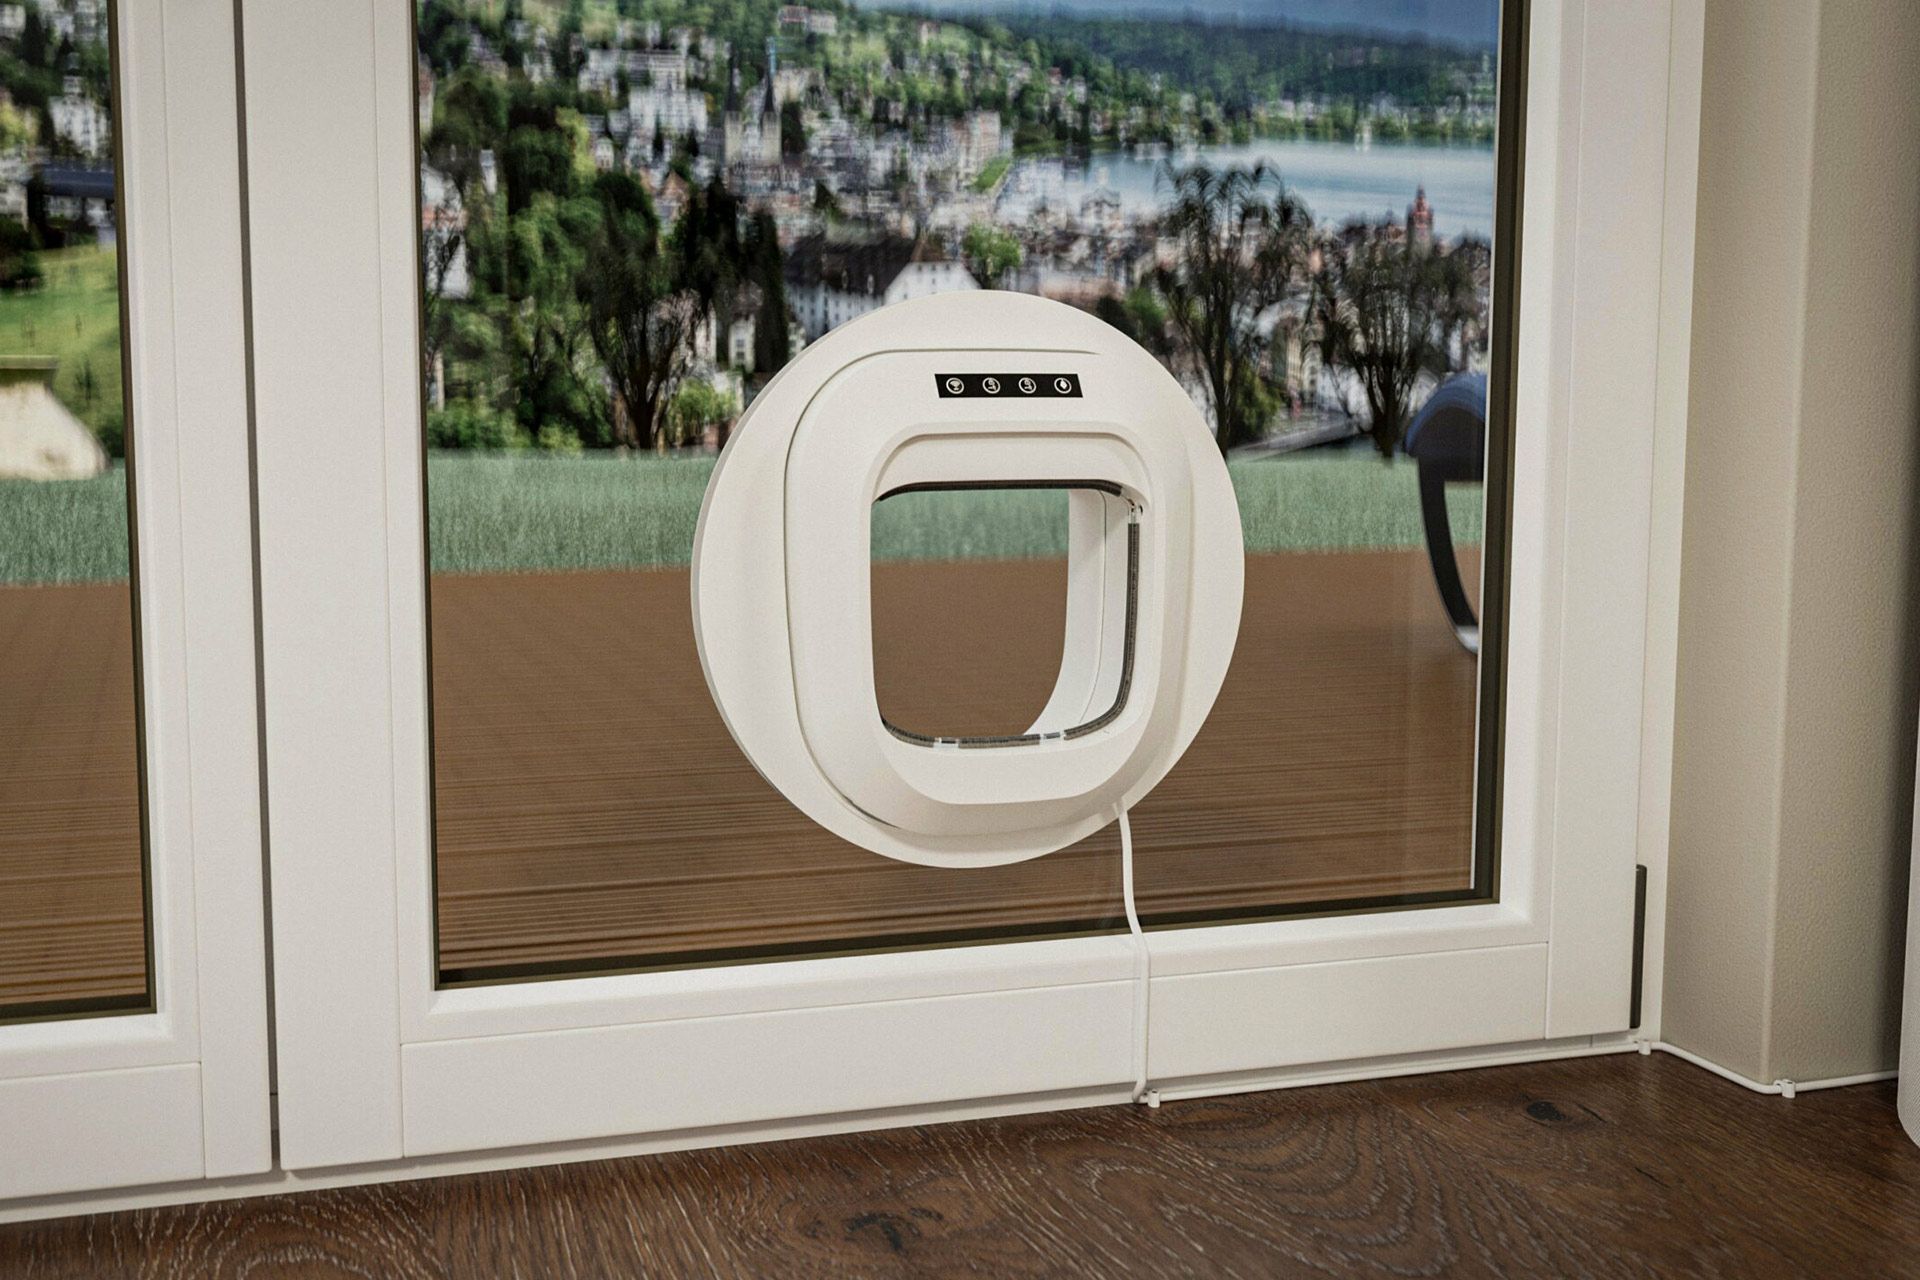 درب گربه ی Flappie از نمای داخل سفید نصب شده روی یک در شیشه‌ای